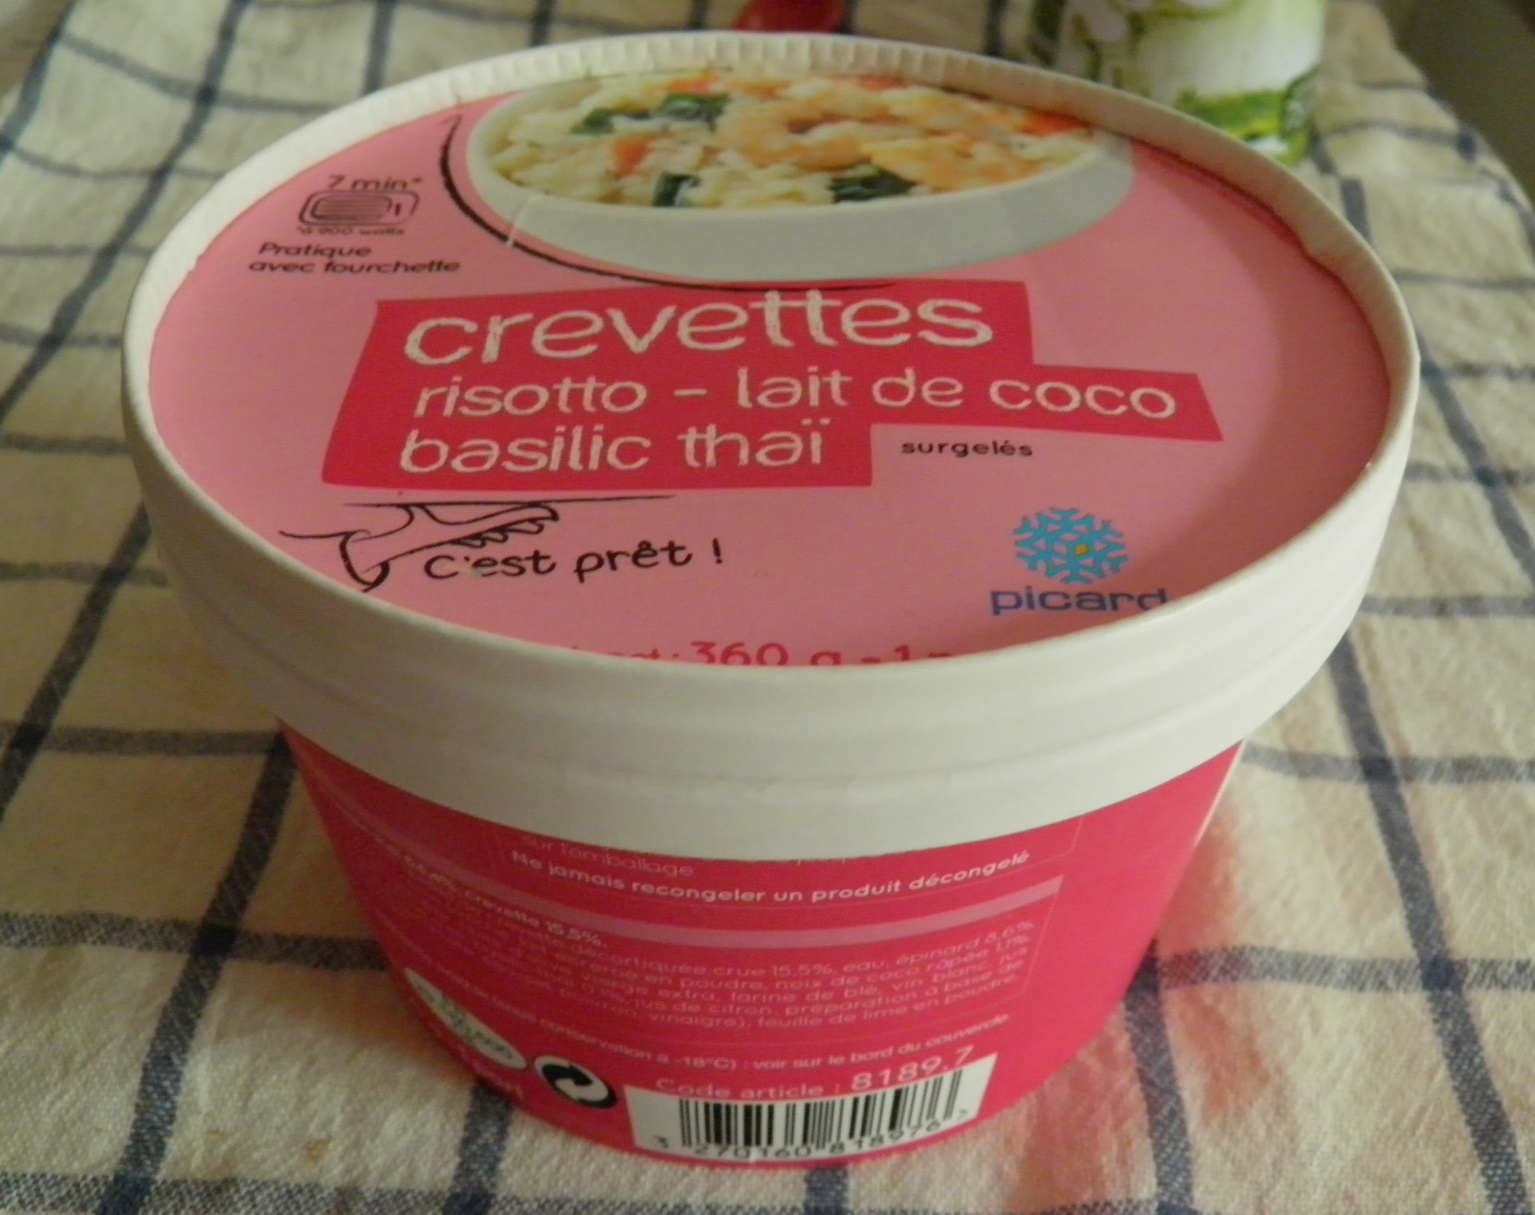 Crevettes risotto-lait de coco-basilic thaï, surgelés - Product - fr